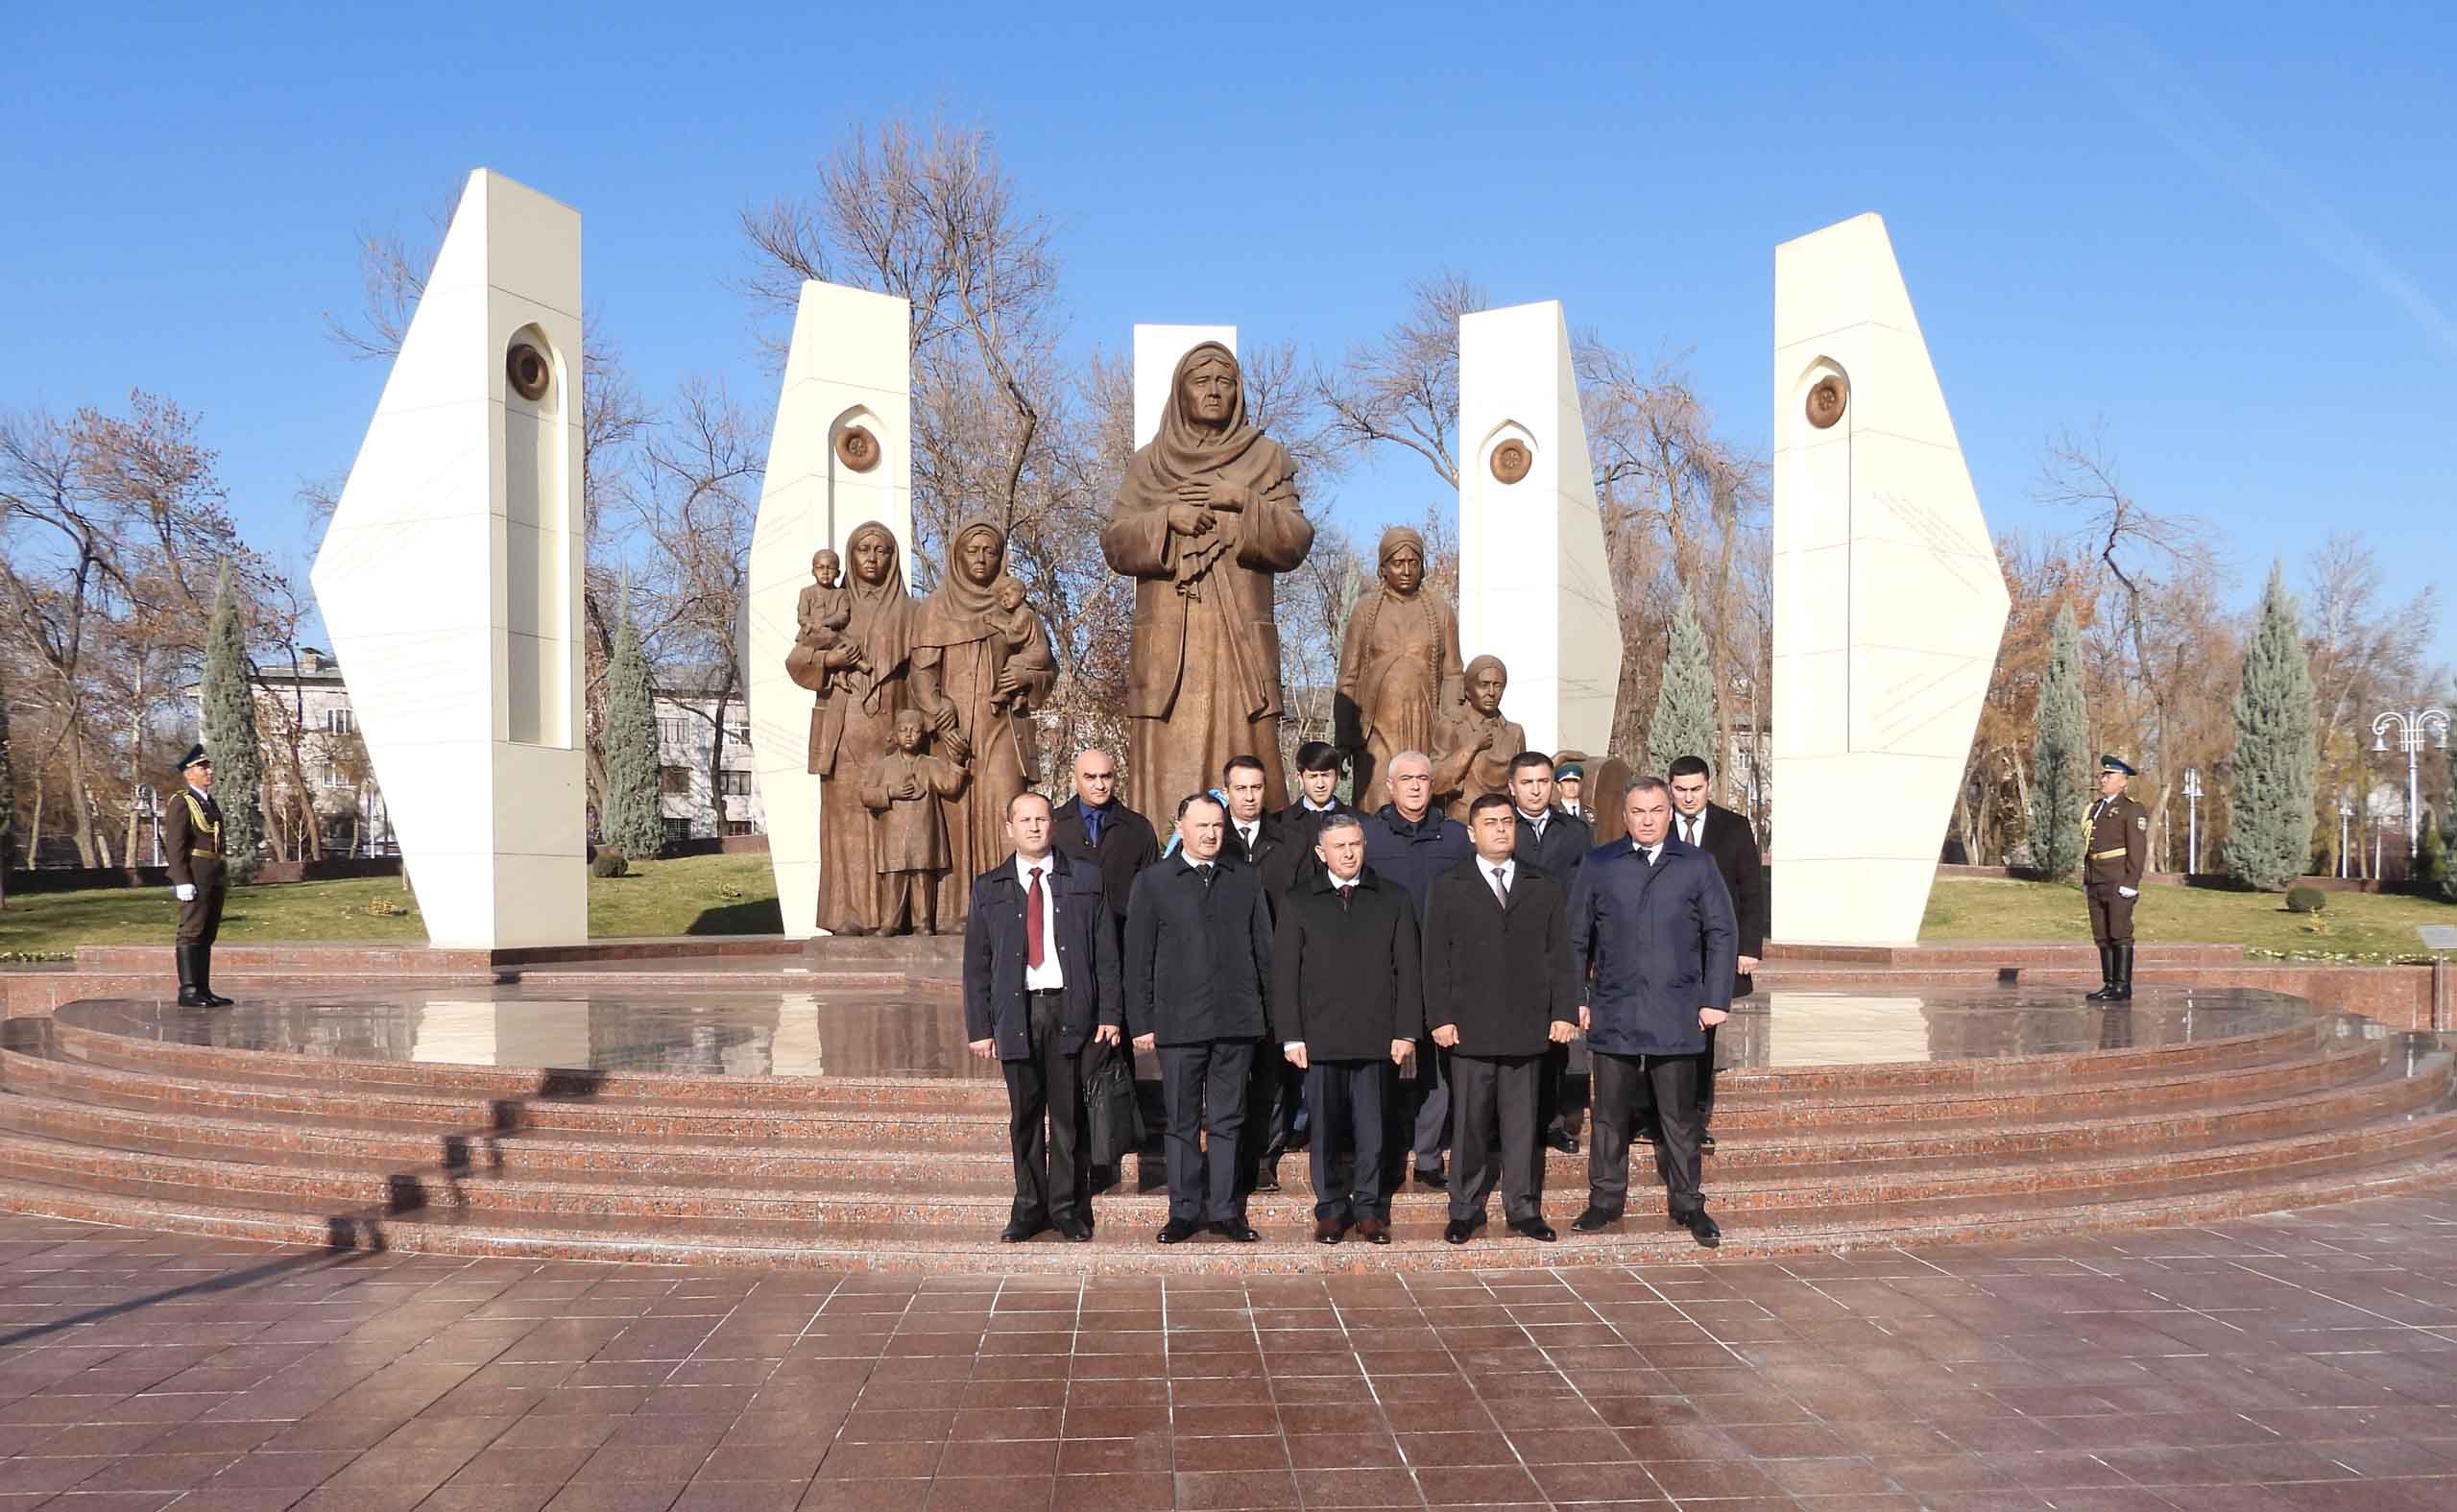 Узбекистан посетила делегация во главе с командующим пограничных войск Республики Таджикистан генерал-полковником Раджабали Рахмоналий.